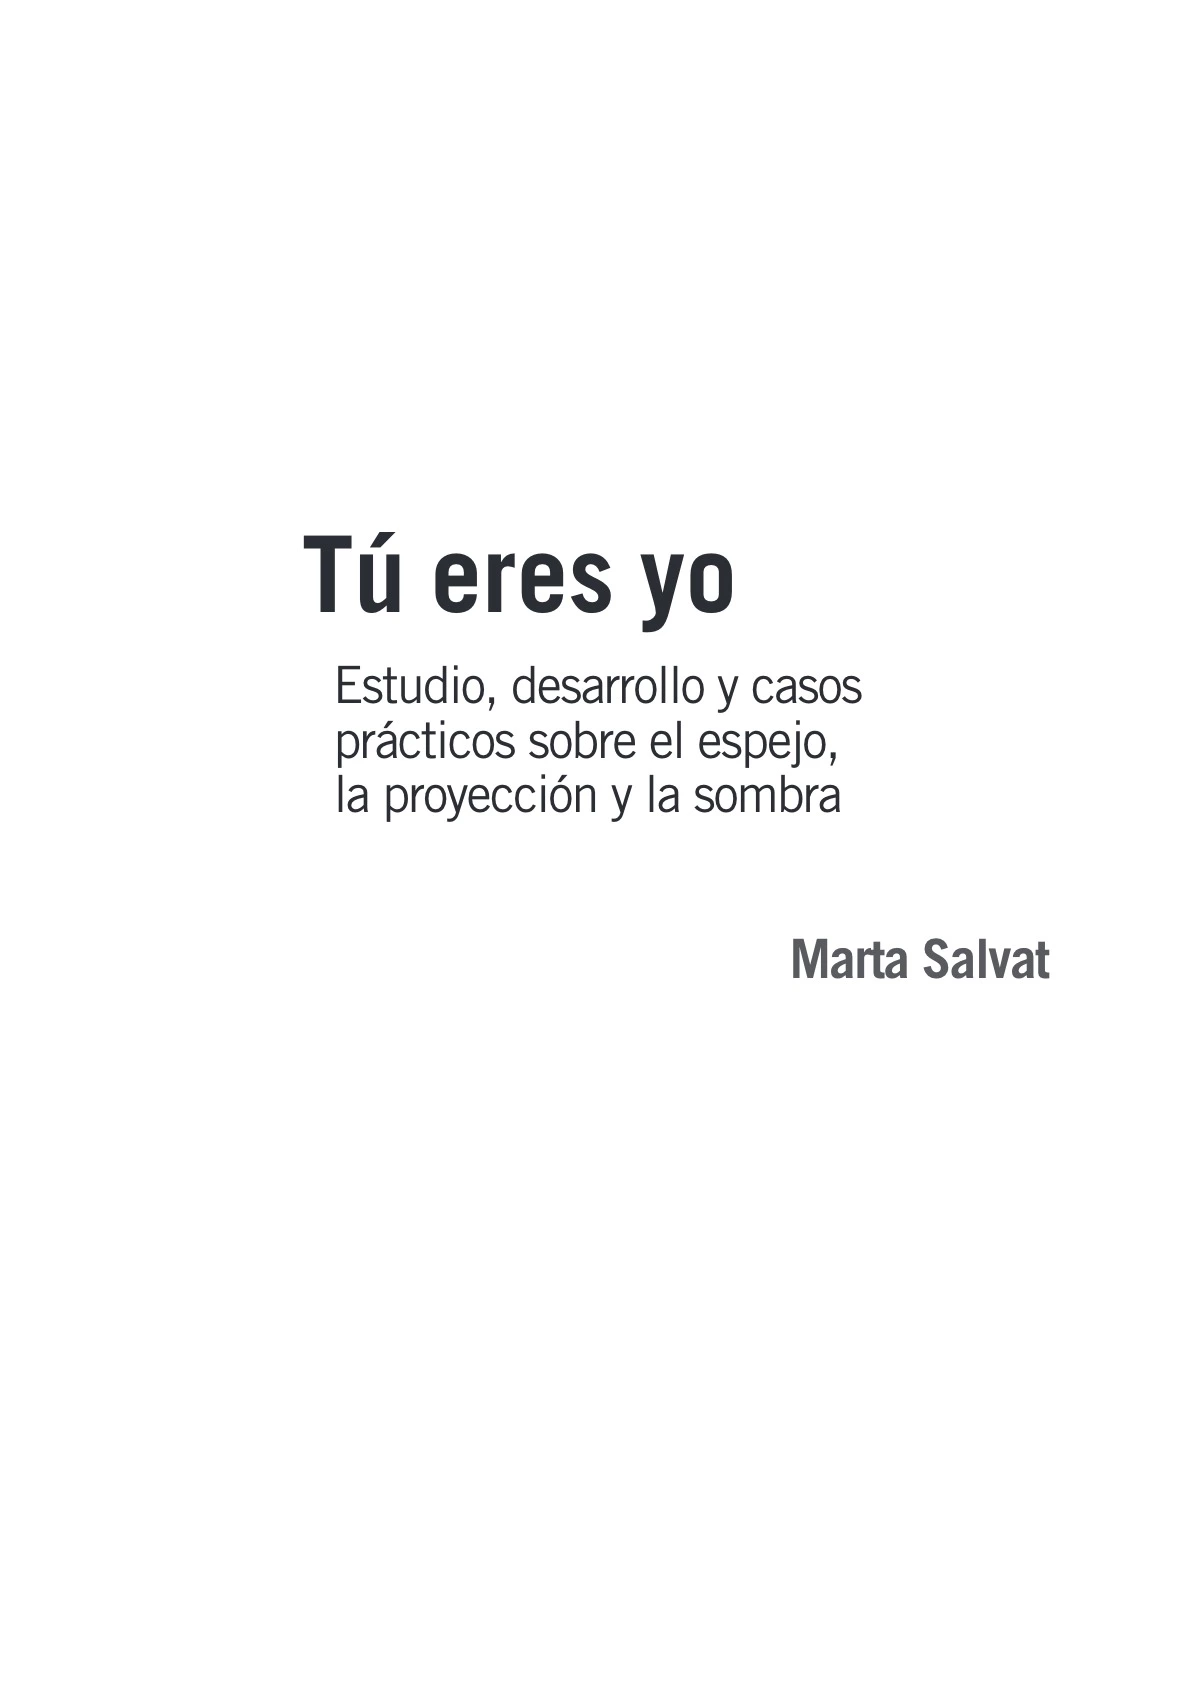 Tu eres yo by Marta Salvat